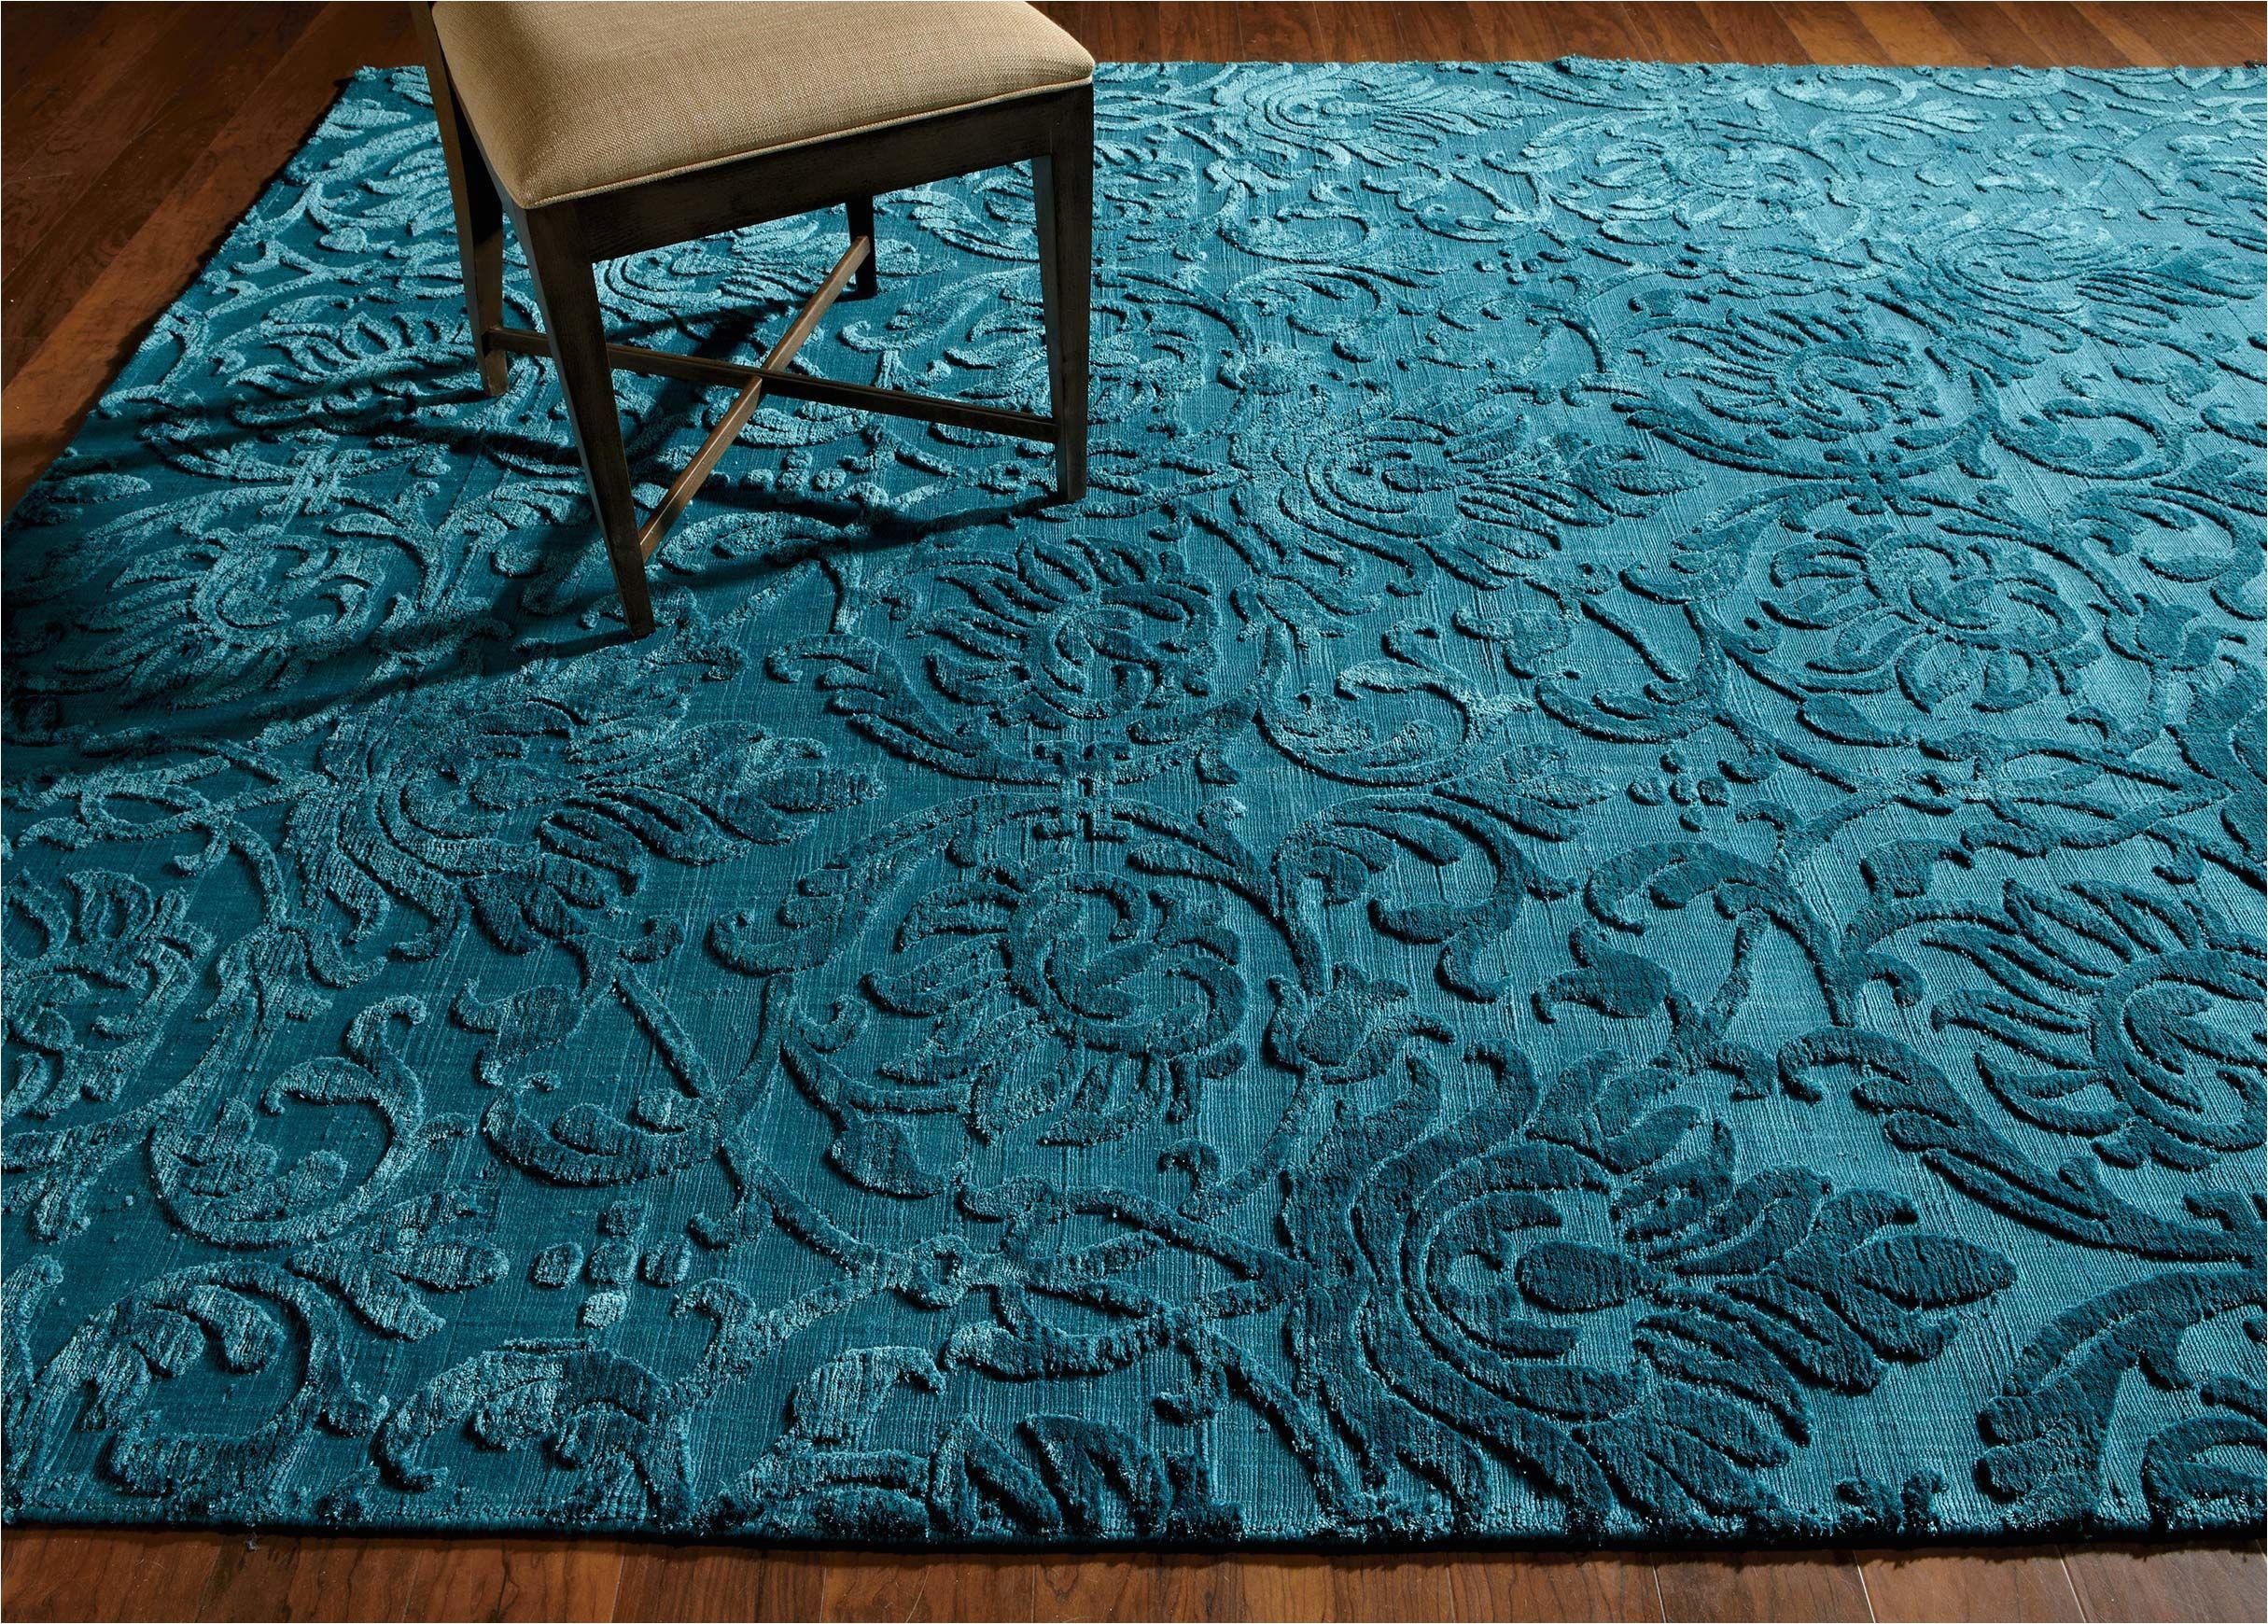 jacquard damask rug turquoise large gray